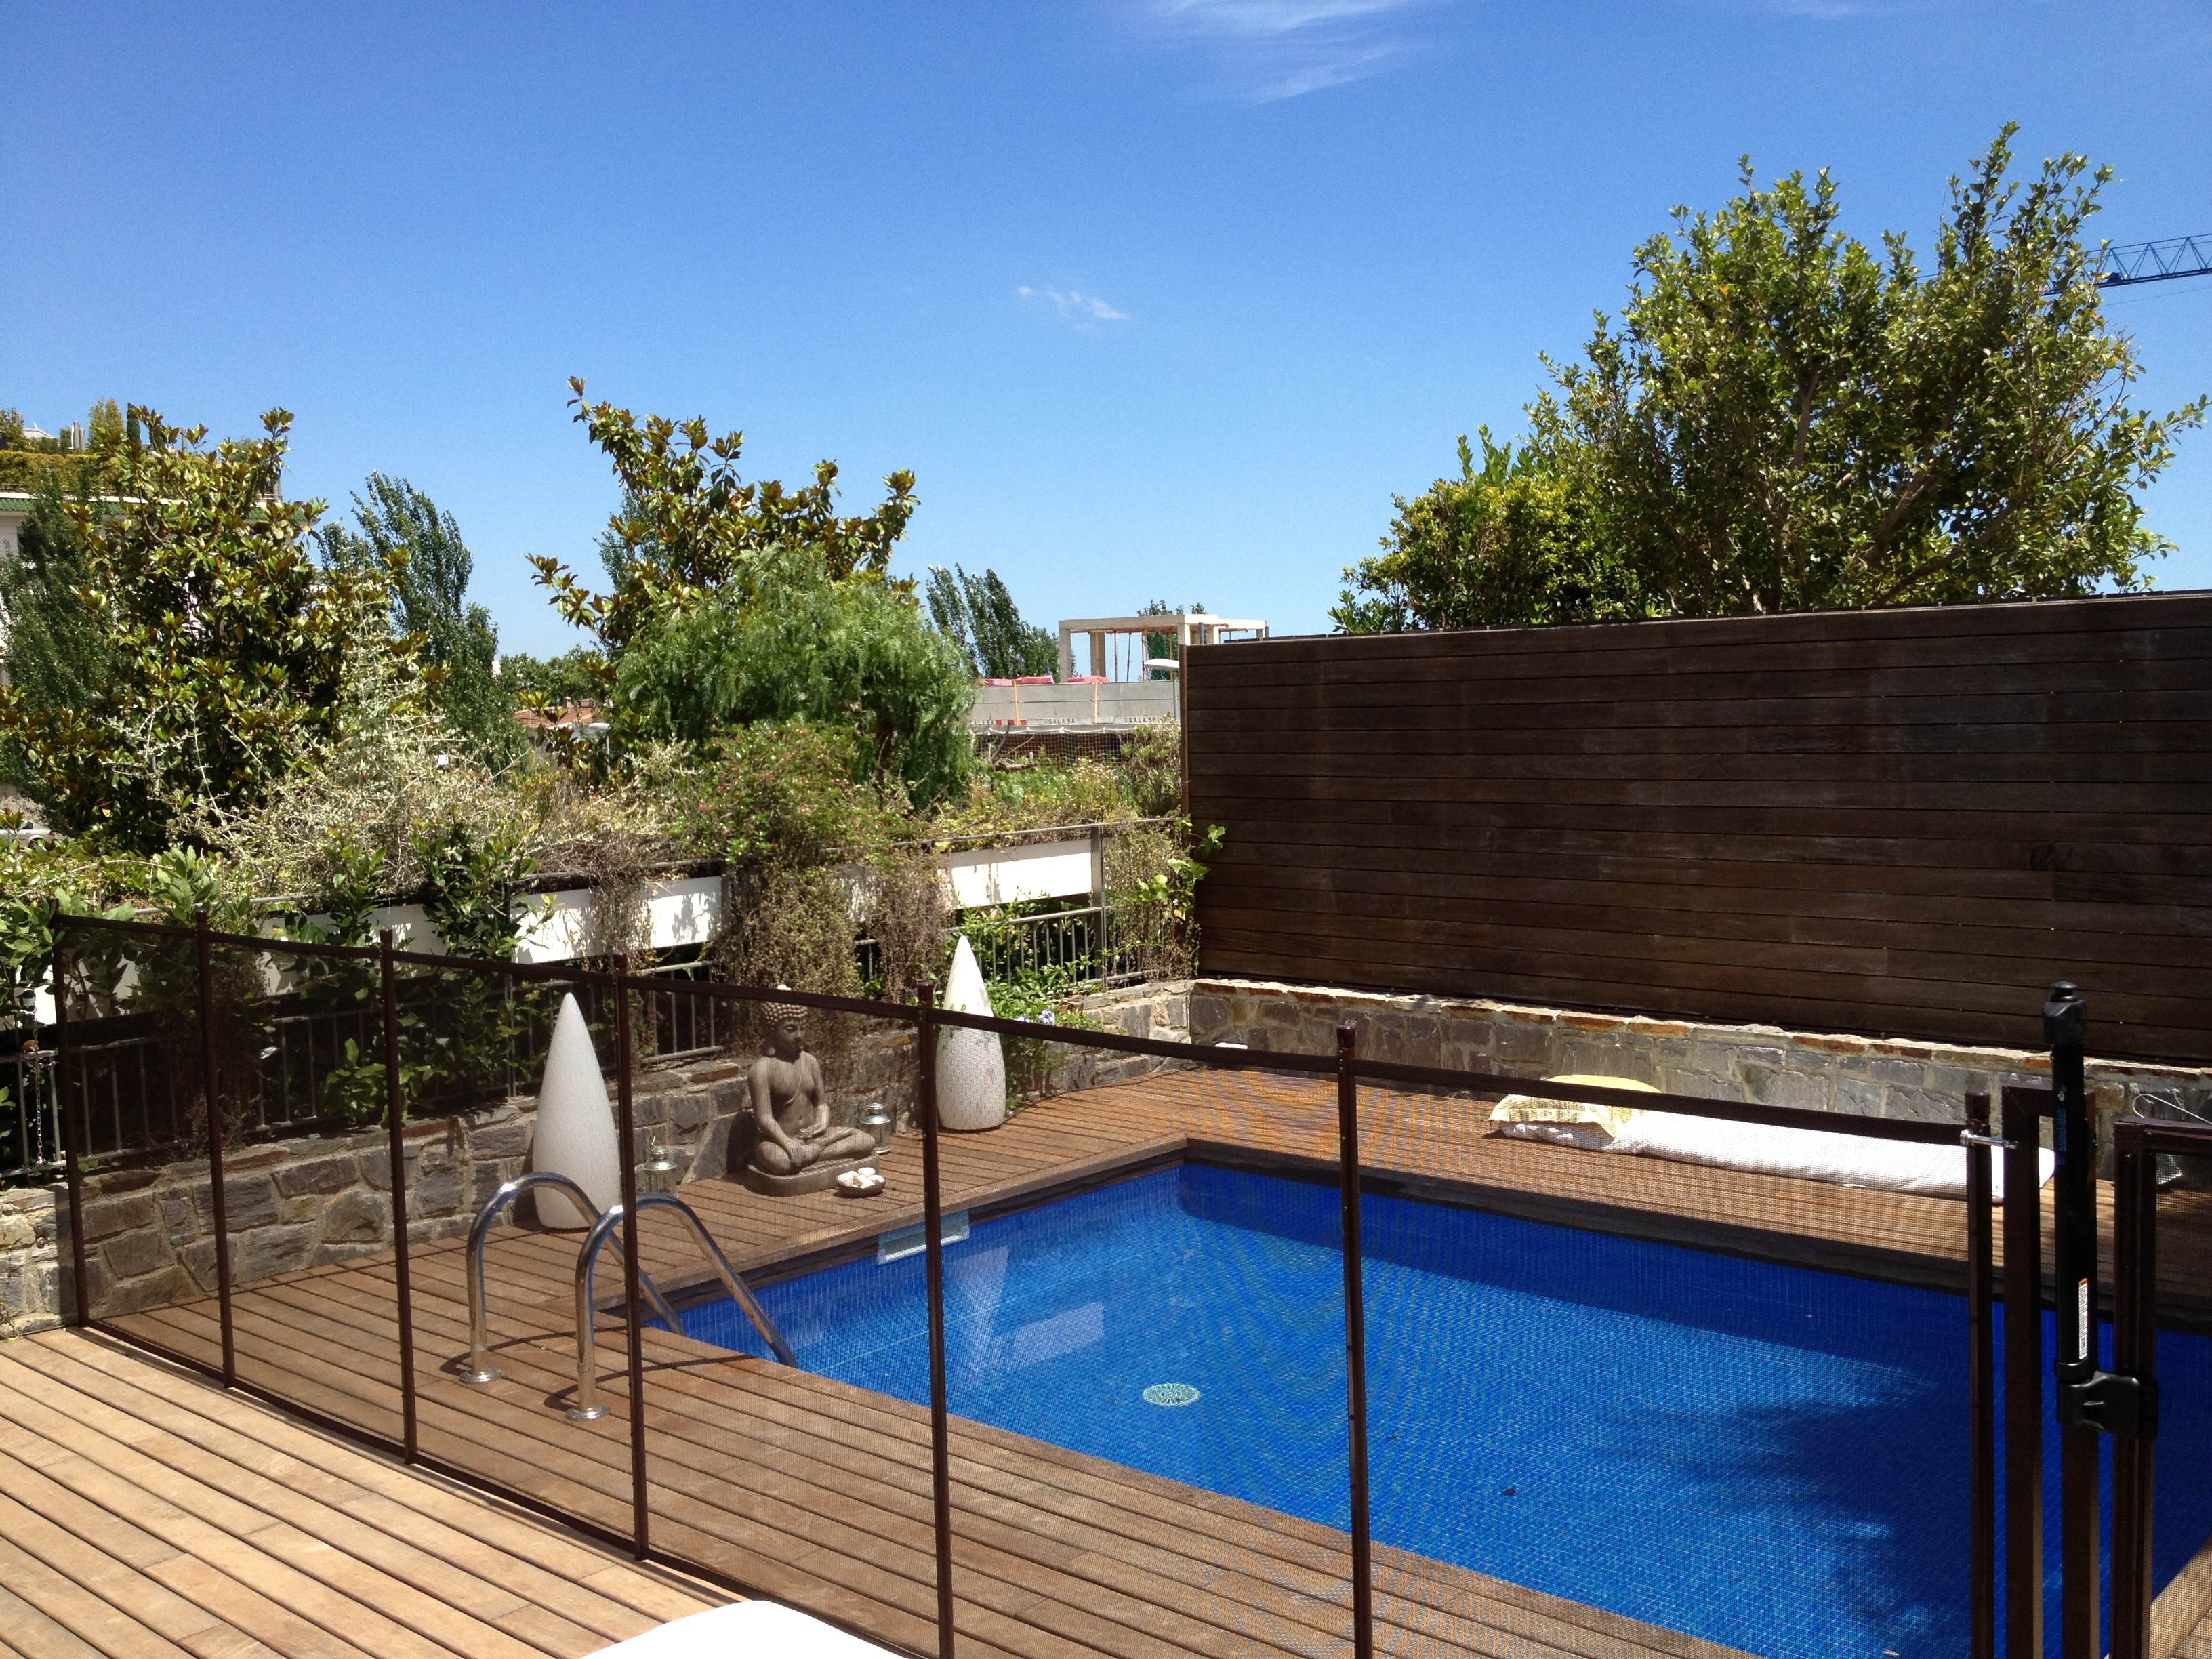 piscina elegancia valla seguridad madera protecbaby decoracion jardines hogar